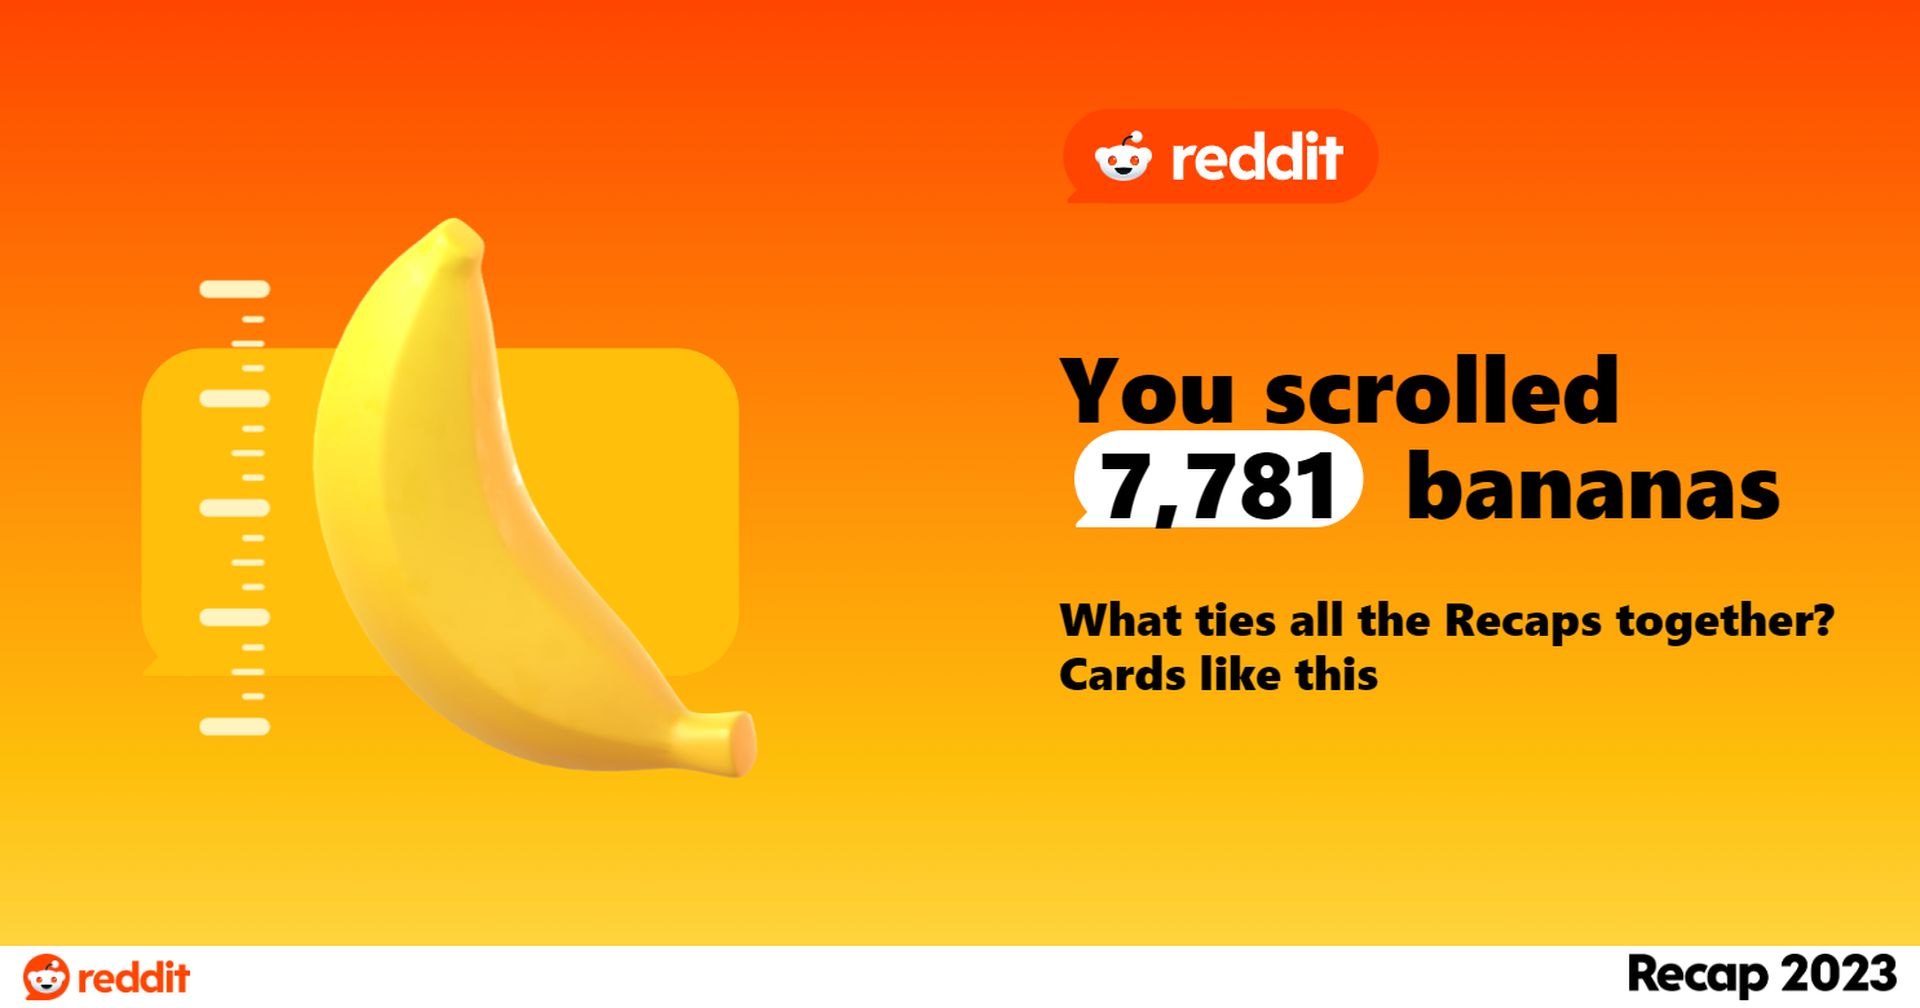 Podsumowanie Reddita 2023 już dostępne! Dowiedz się, ile bananów przewinąłeś w tym roku